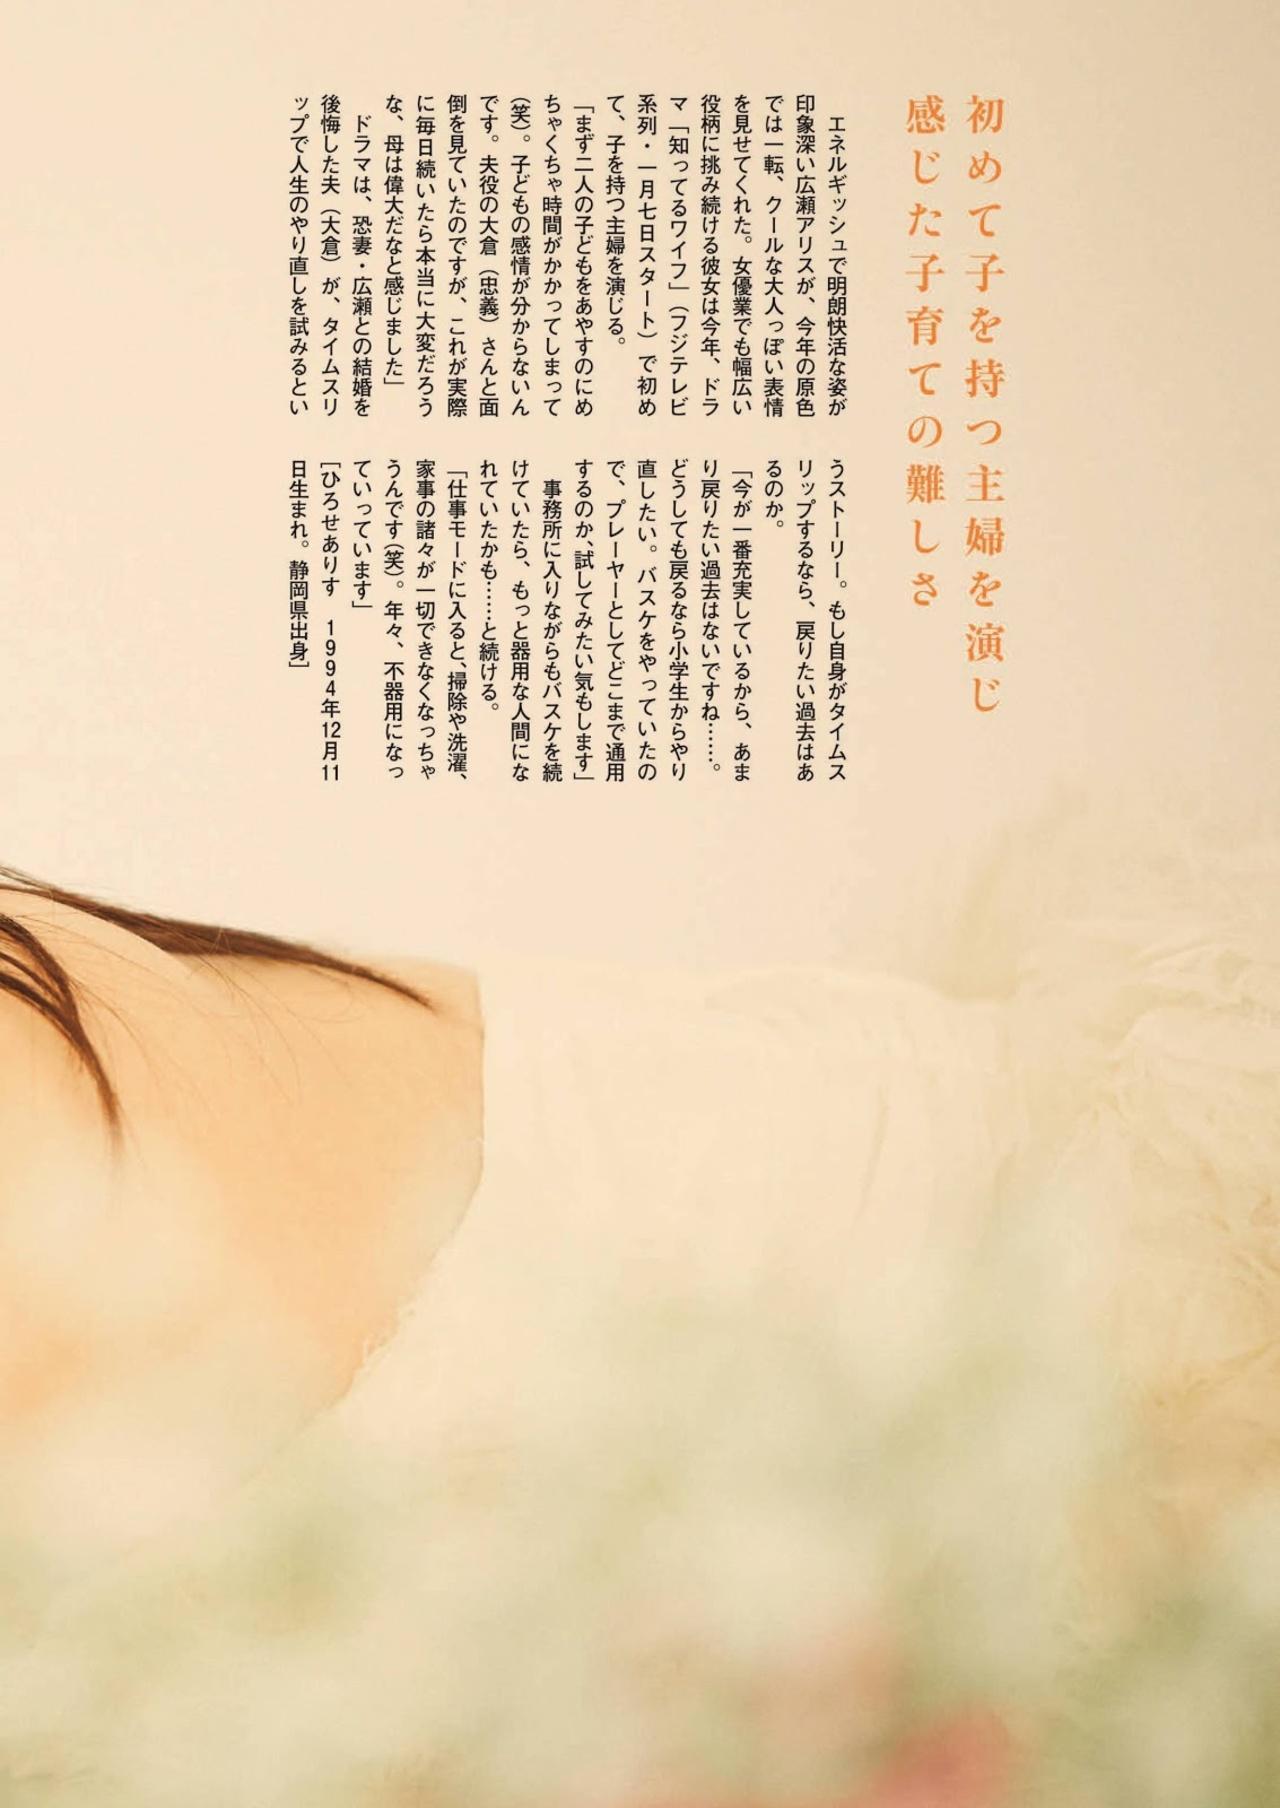 Hirose Alice 広瀬アリス, Shukan Bunshun 2021.01.14 (週刊文春 2021年1月14日号)(5)